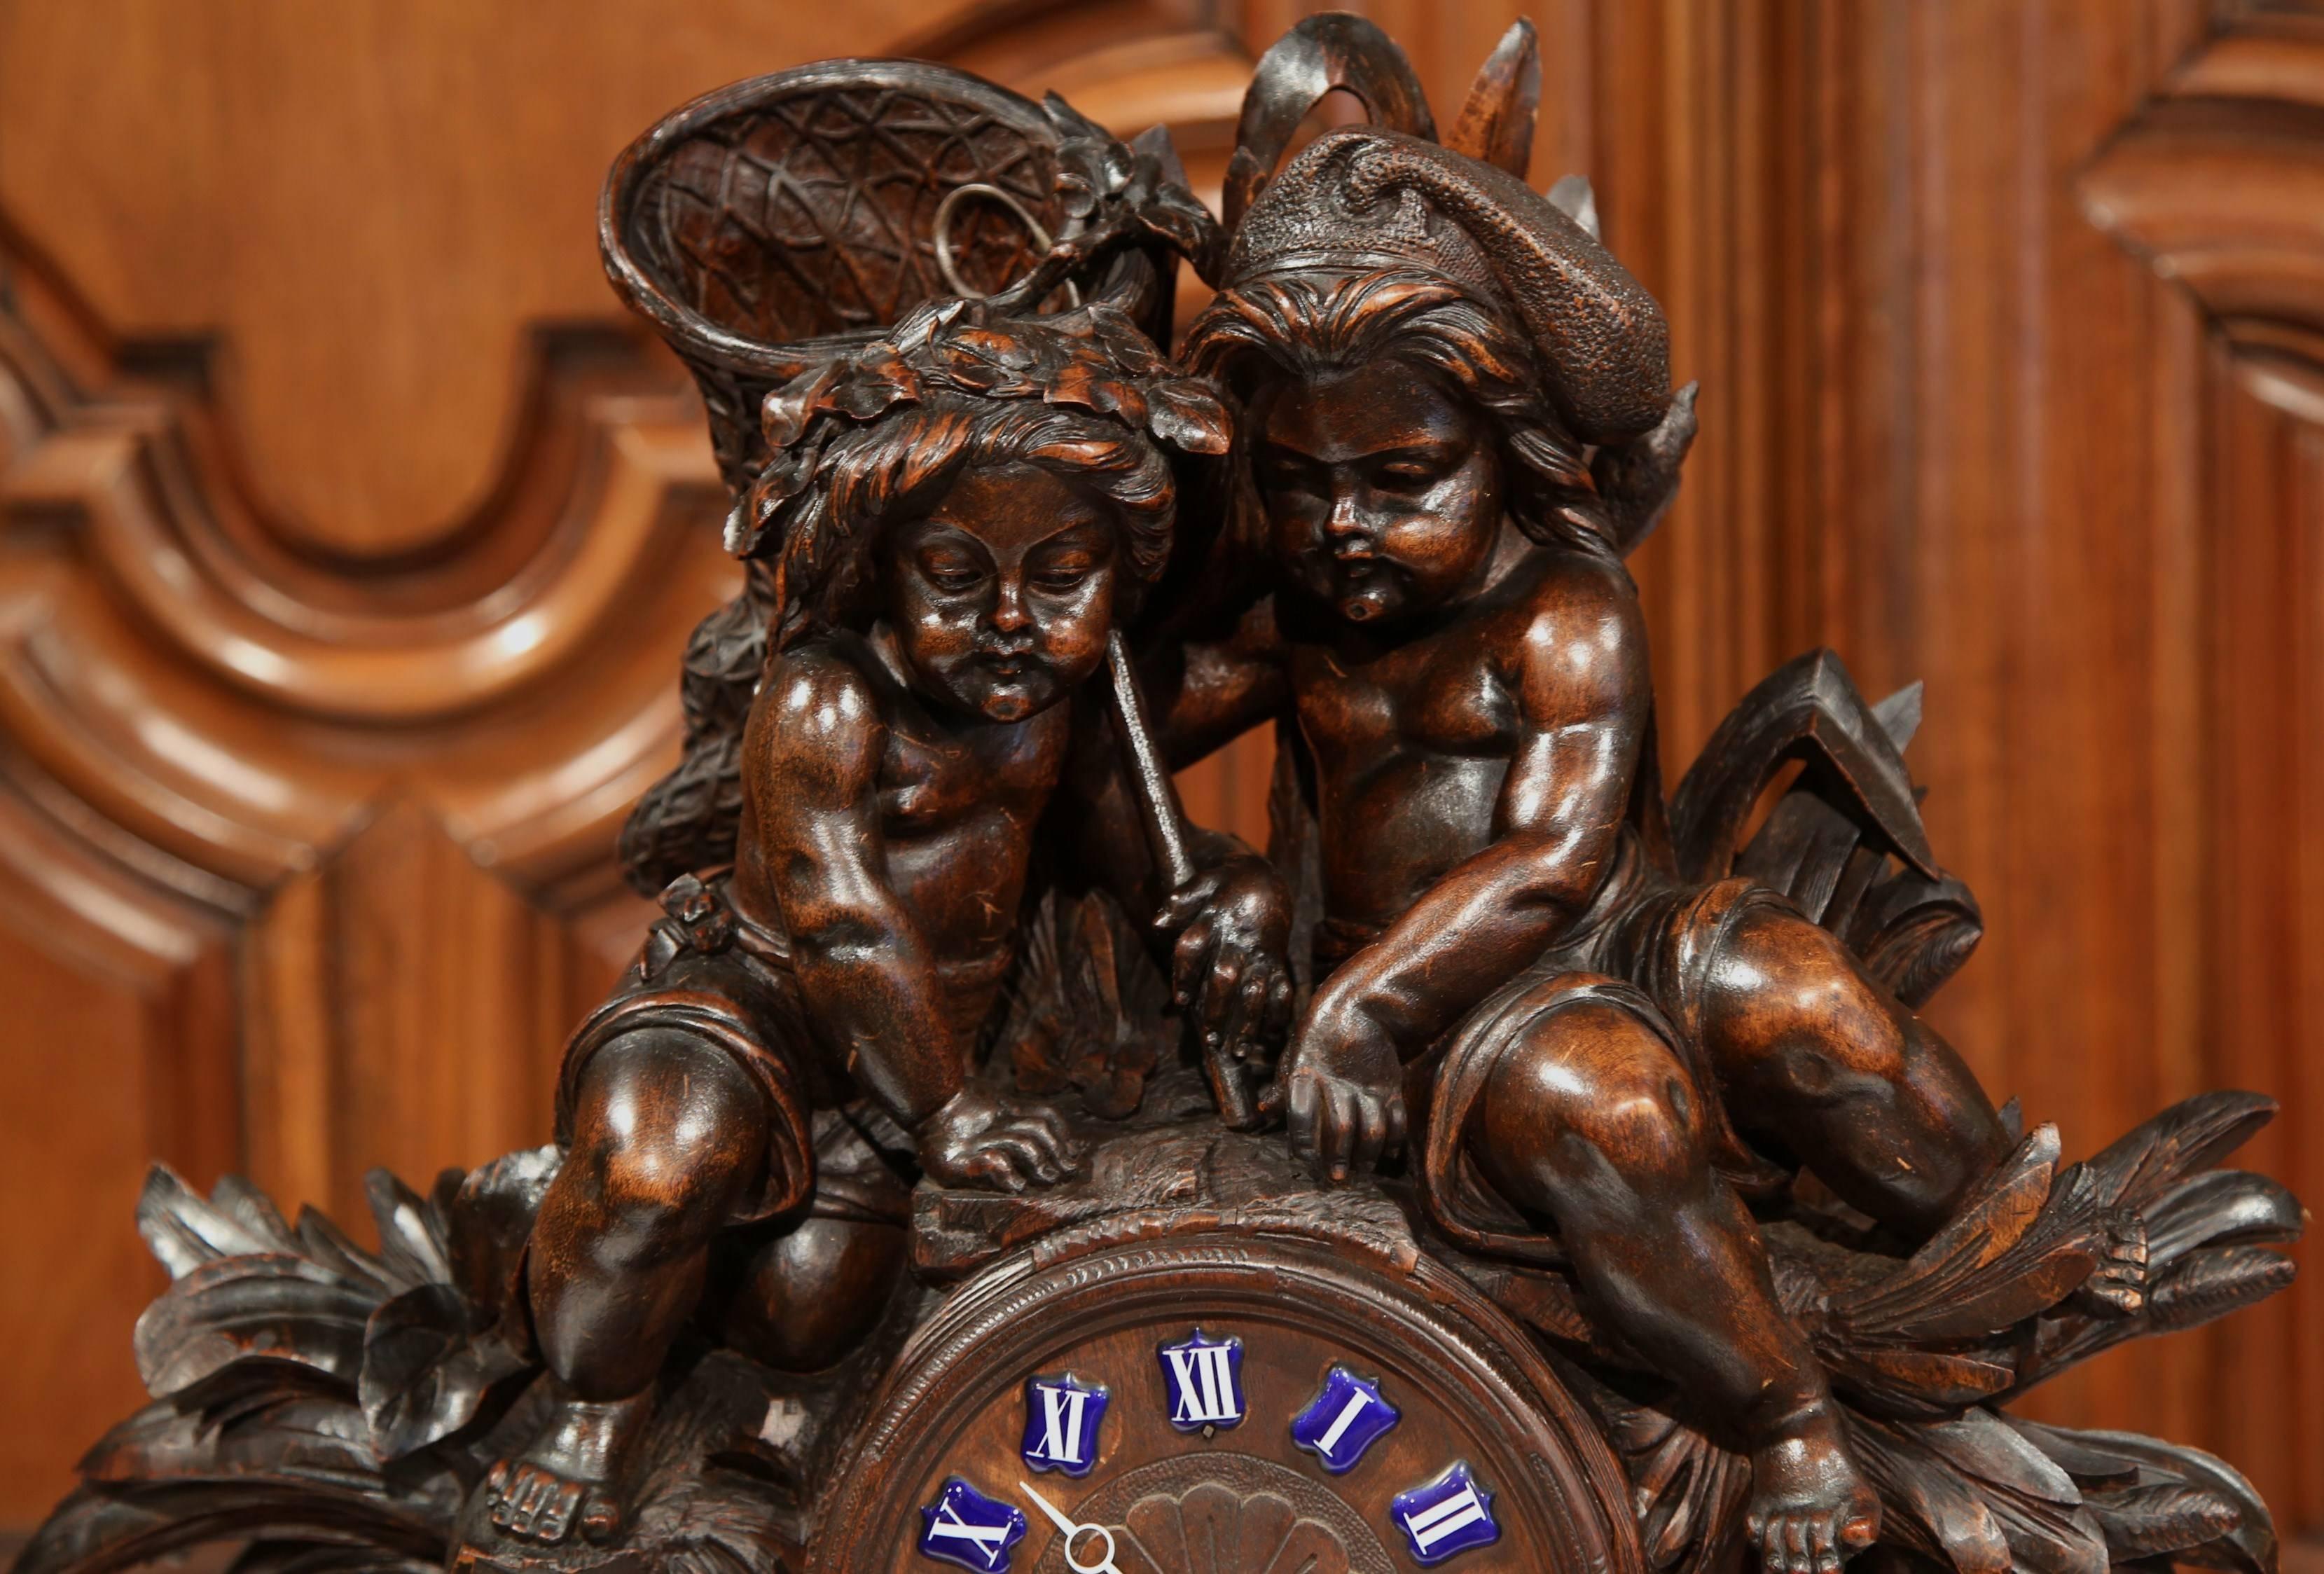 Décorez votre buffet ou votre cheminée avec cette horloge monumentale en bois fruitier ancien. Fabriqué en Suisse, vers 1860, ce chef-d'œuvre de chronométrage présente deux chérubins assis, sculptés à la main, qui tiennent un panier de raisin avec